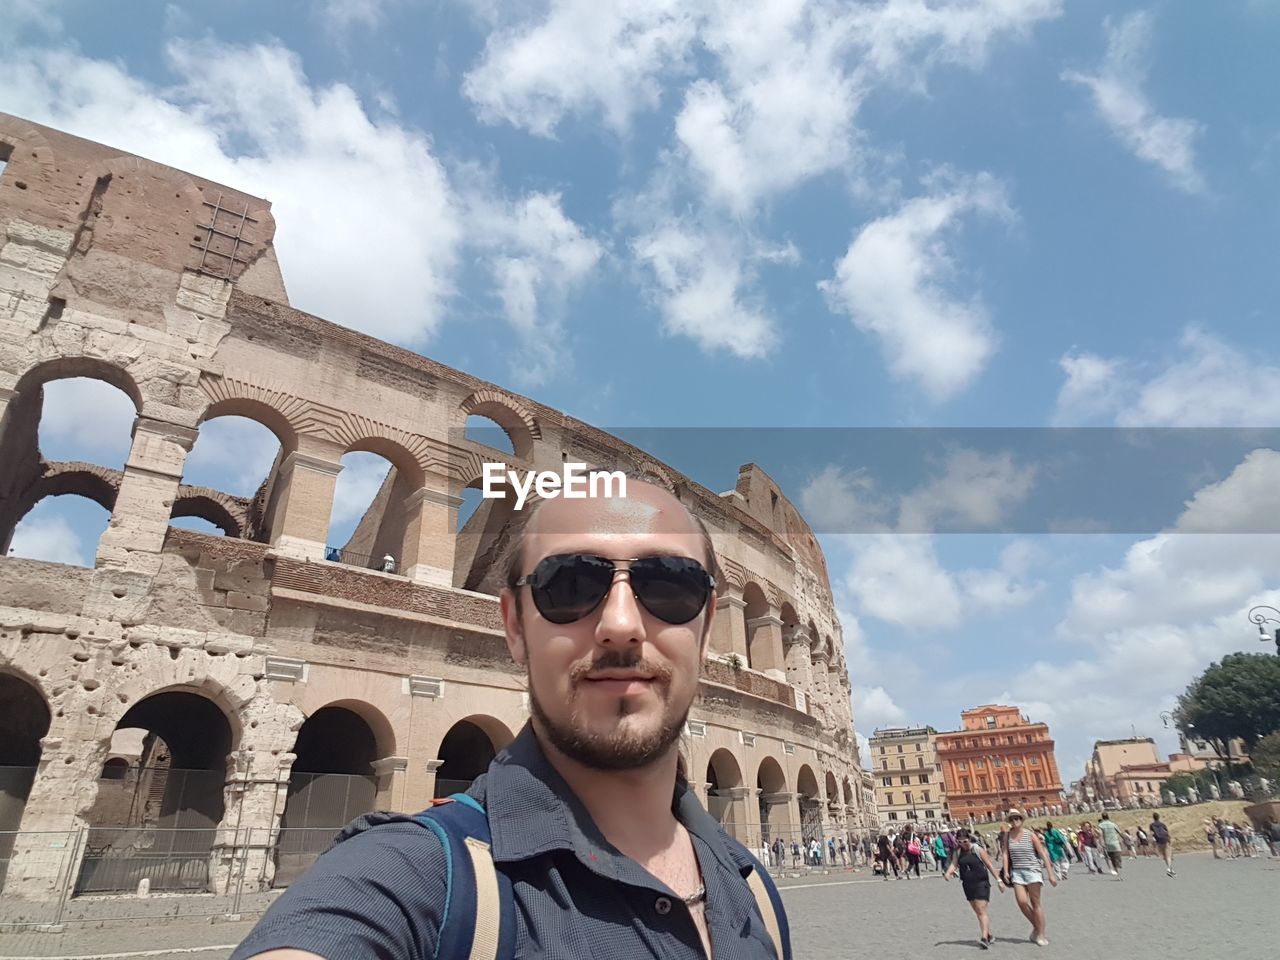 Portrait of man wearing sunglasses against coliseum